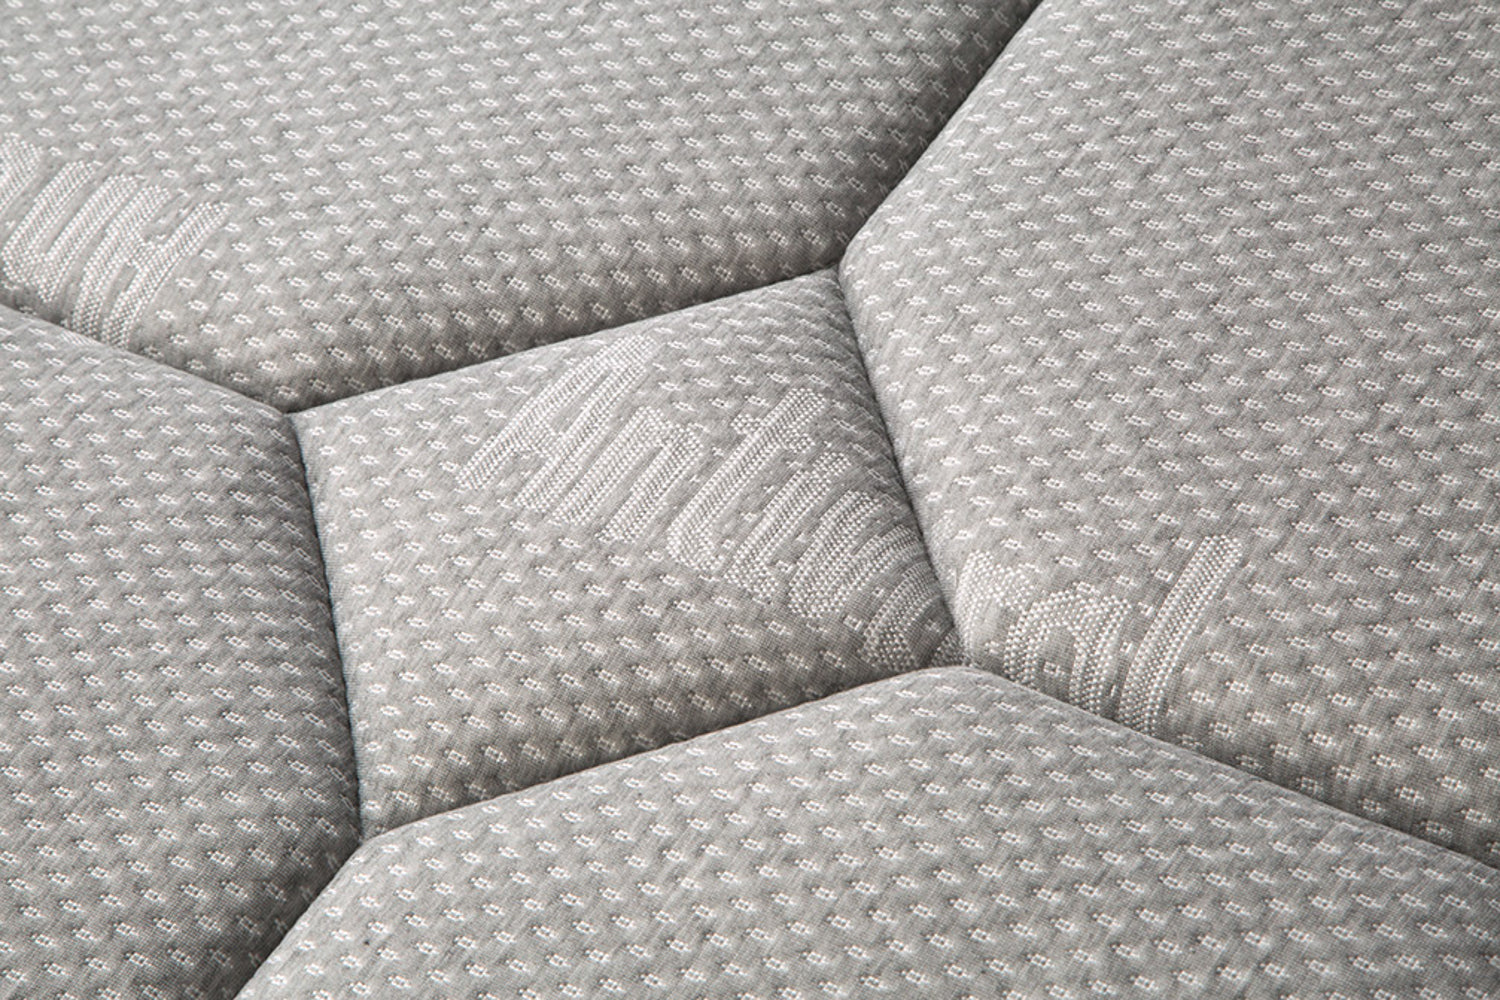 Colchón viscoelastico gama alta con nucleo de HR, altura 30 cm - Viscoalto  - Don Baraton: tienda de sofás, colchones y muebles